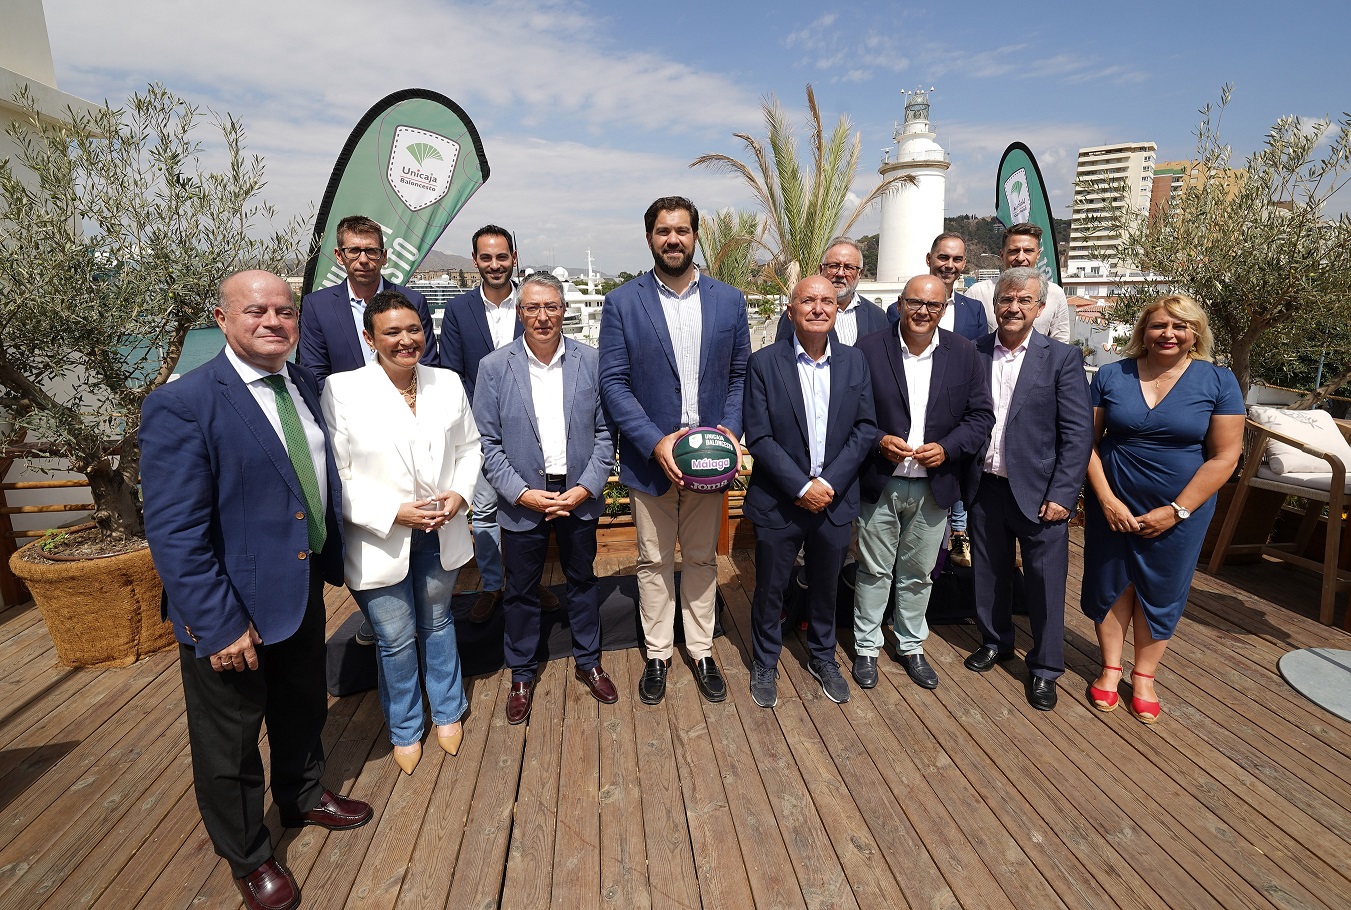 Marbella participa junto a otras diez localidades en una nueva edición de la campaña de Unicaja Baloncesto ‘Nuestra provincia juega’